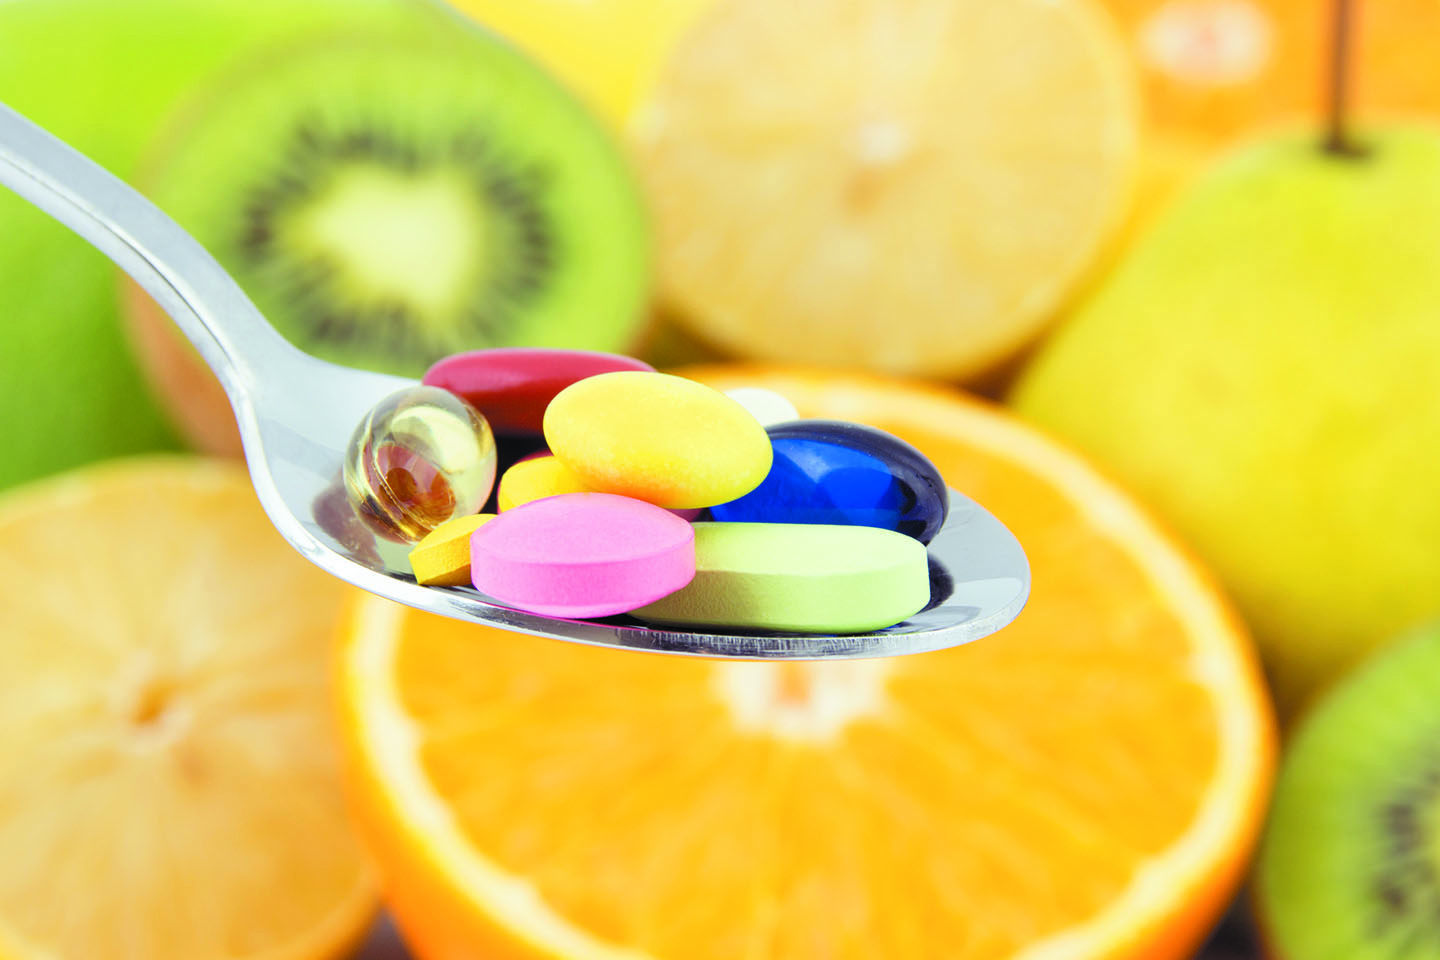 Résultat de recherche d'images pour "vitamin c to get pregnant"